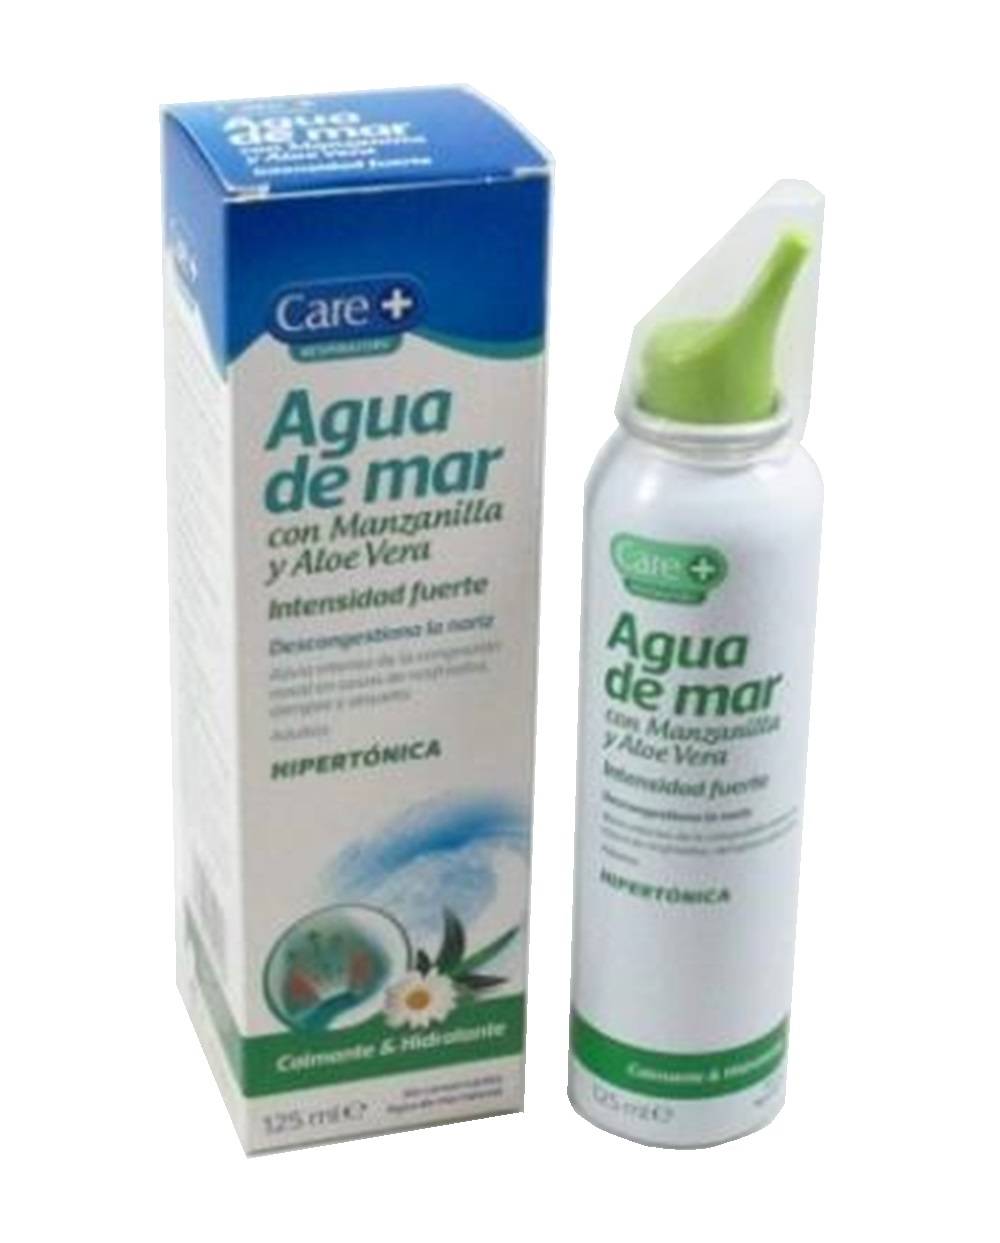 AGUA DE MAR - INTENSIDAD FUERTE - Cuidado Nasal